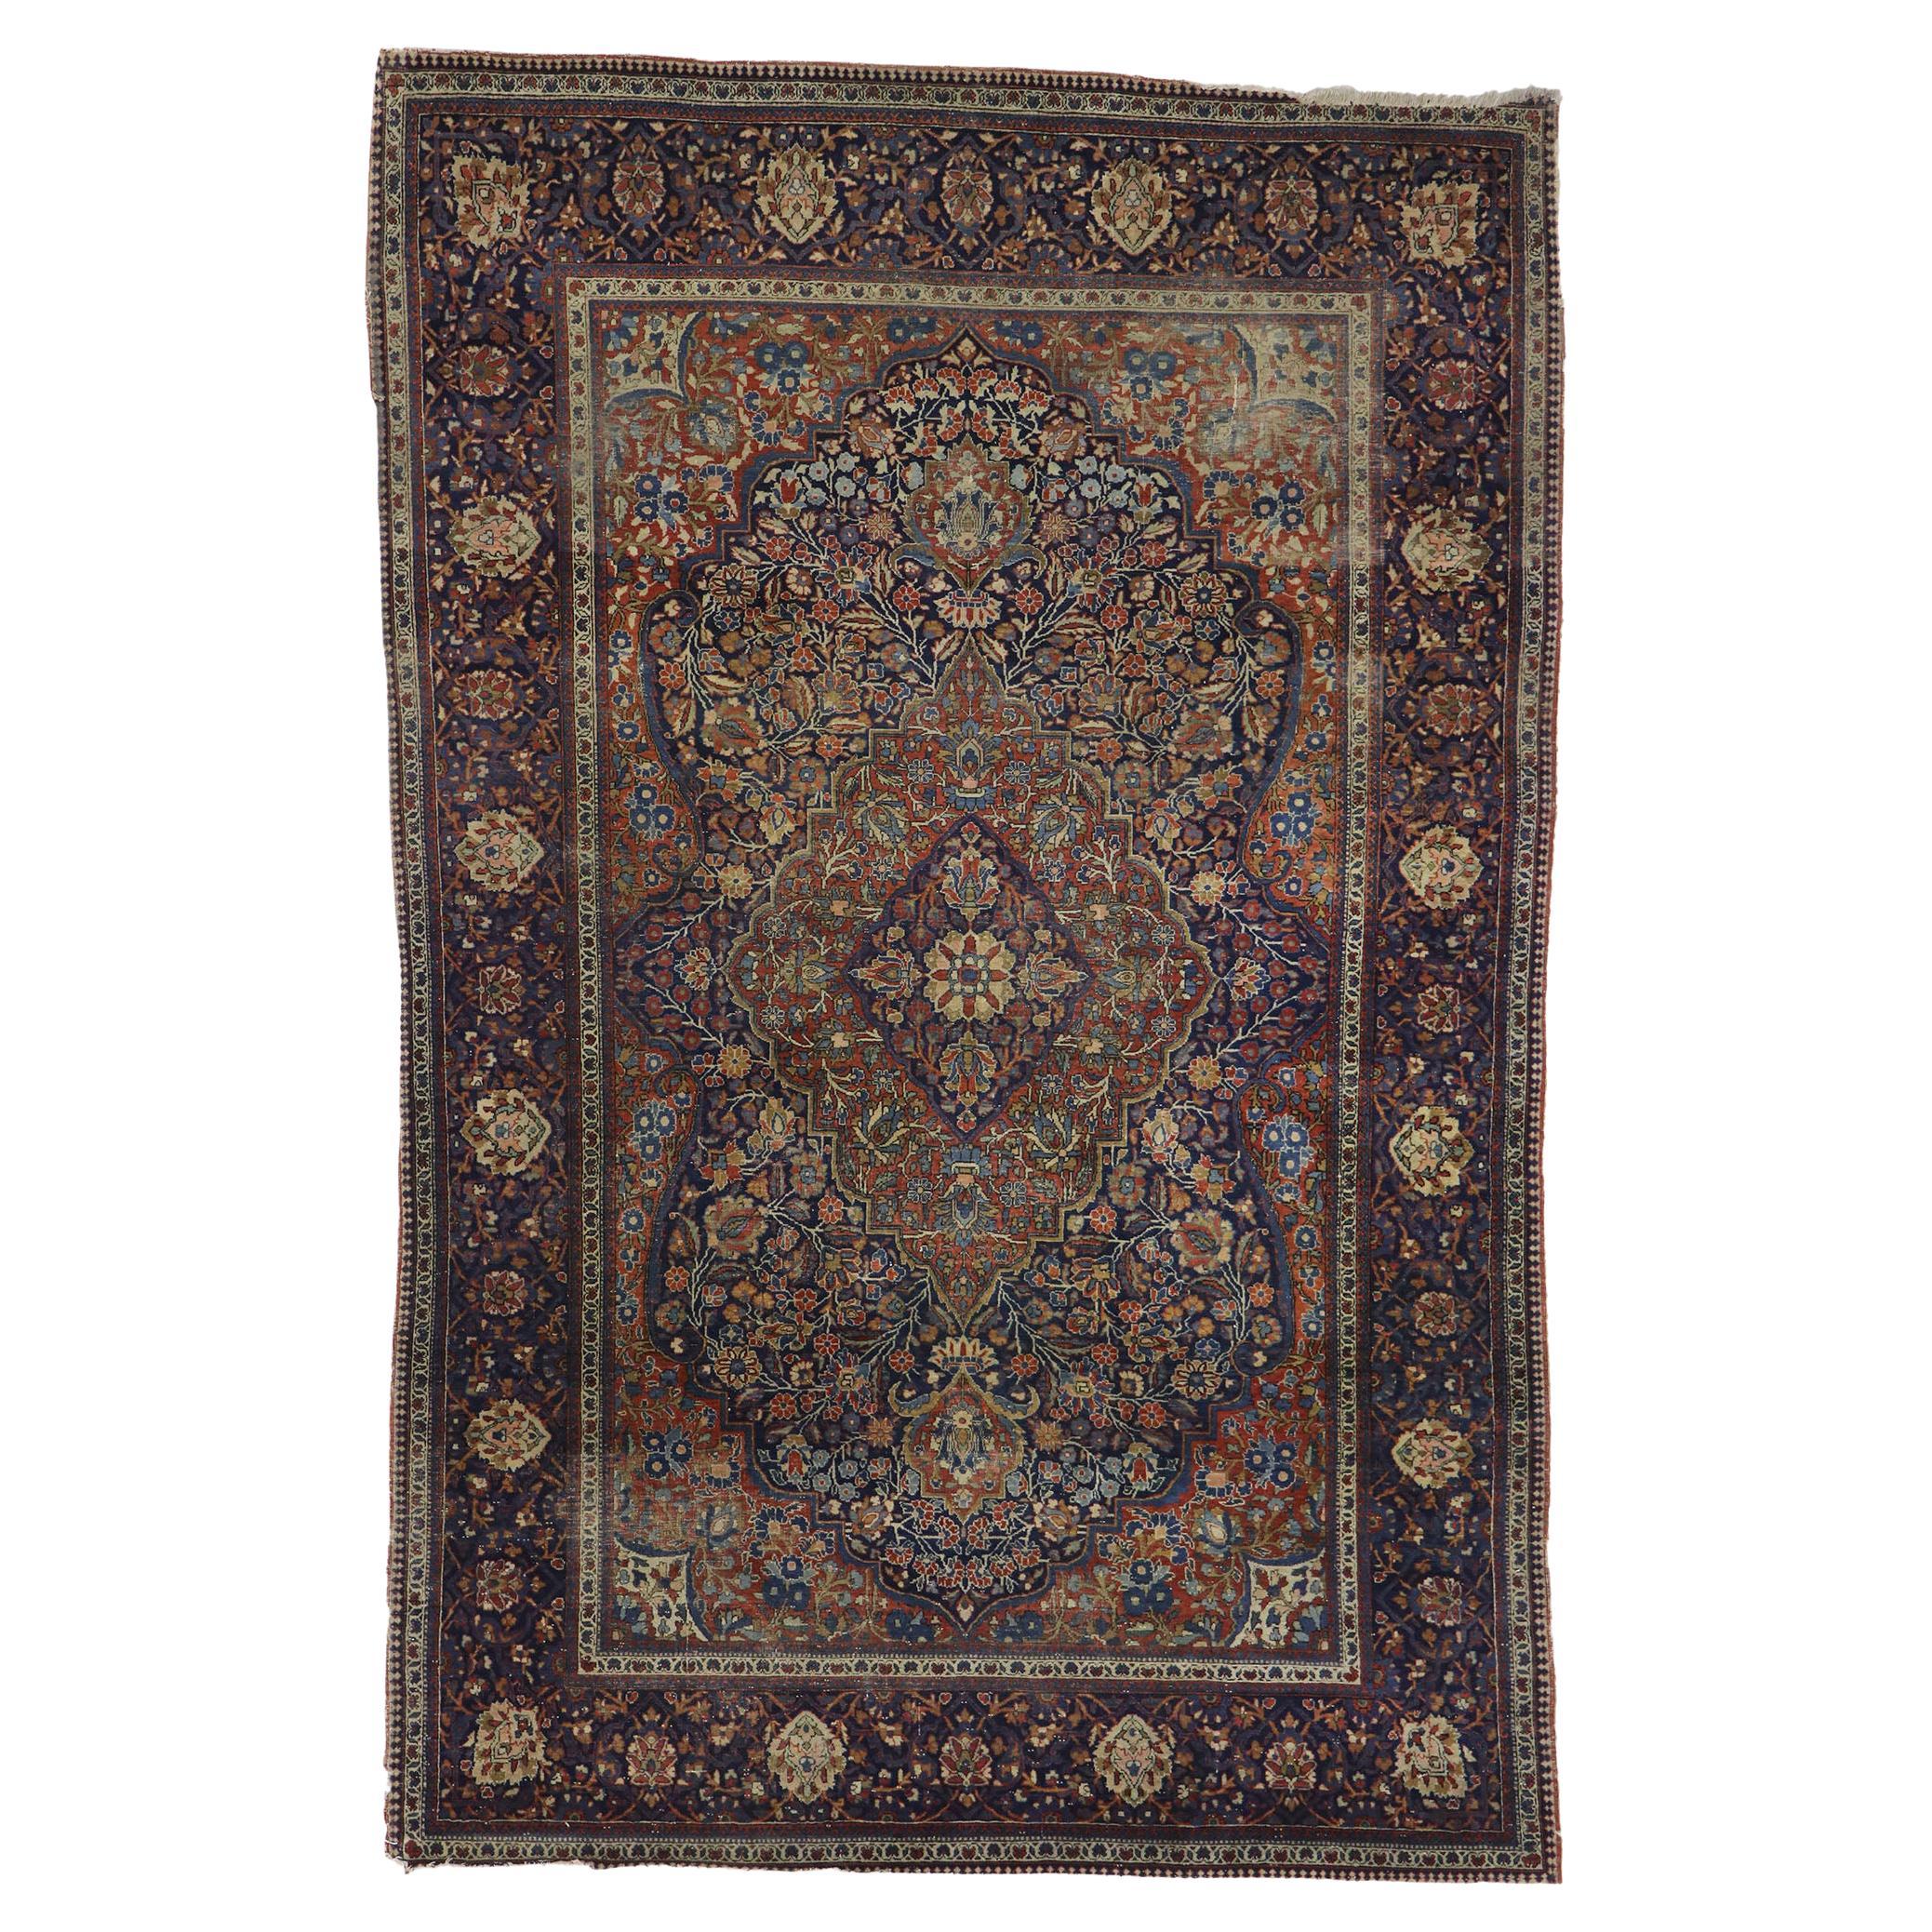 Antiker persischer Kashan-Teppich, strenge Eleganz trifft auf entspannte Vertrautheit